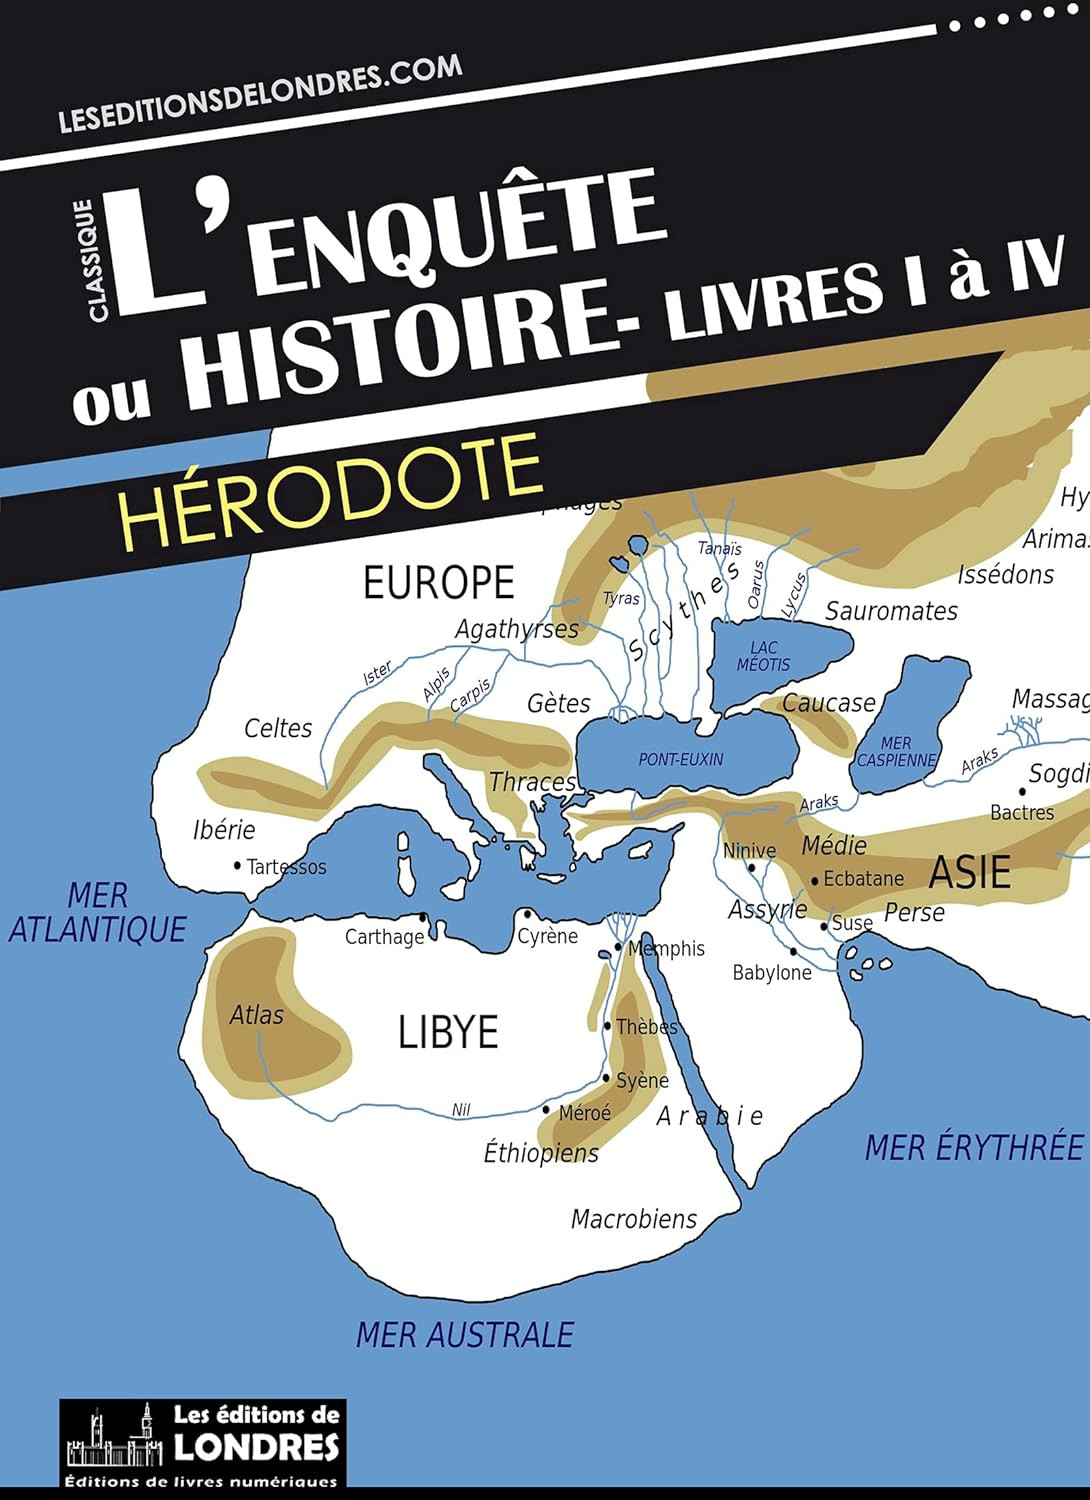 Publisher Folio - Lenquete (Livres i a iv) - Hérodote